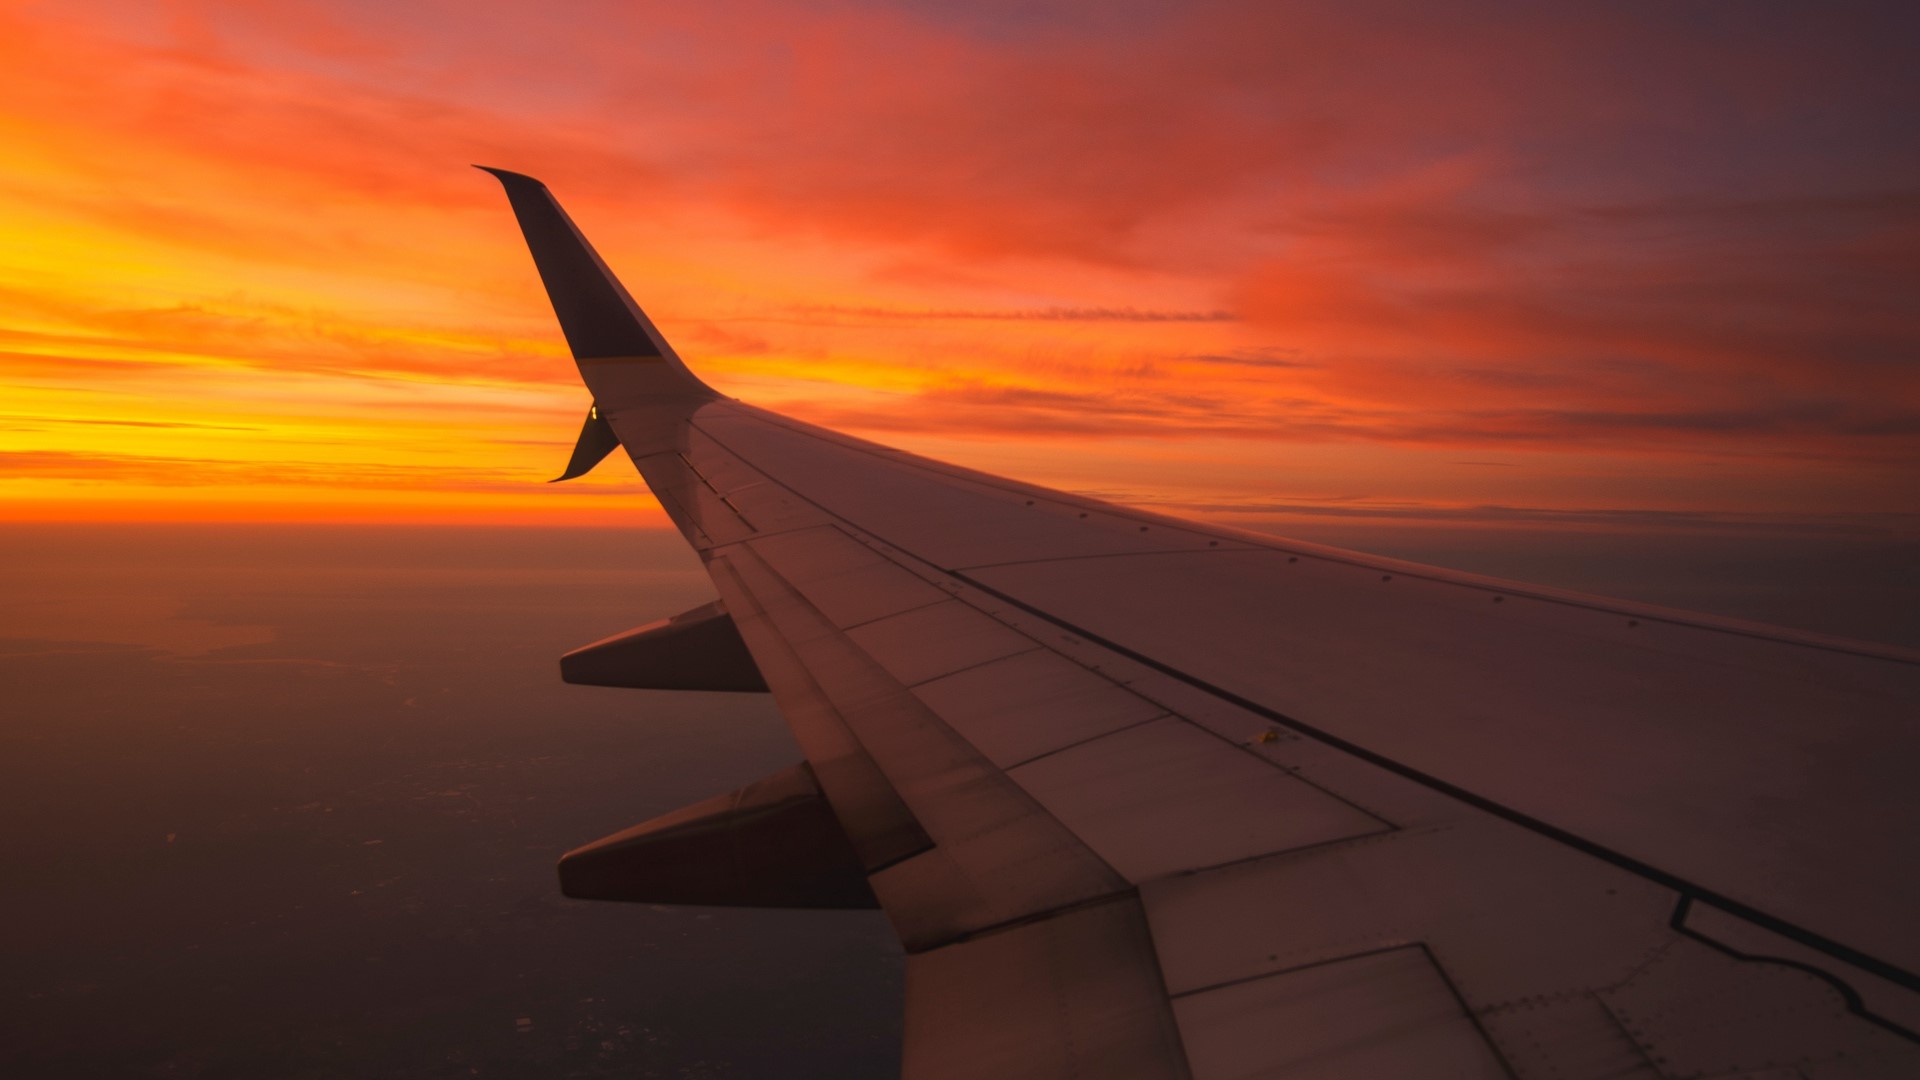 Wallpaper / sunset, orange, airplane, airplane wing, sky free download